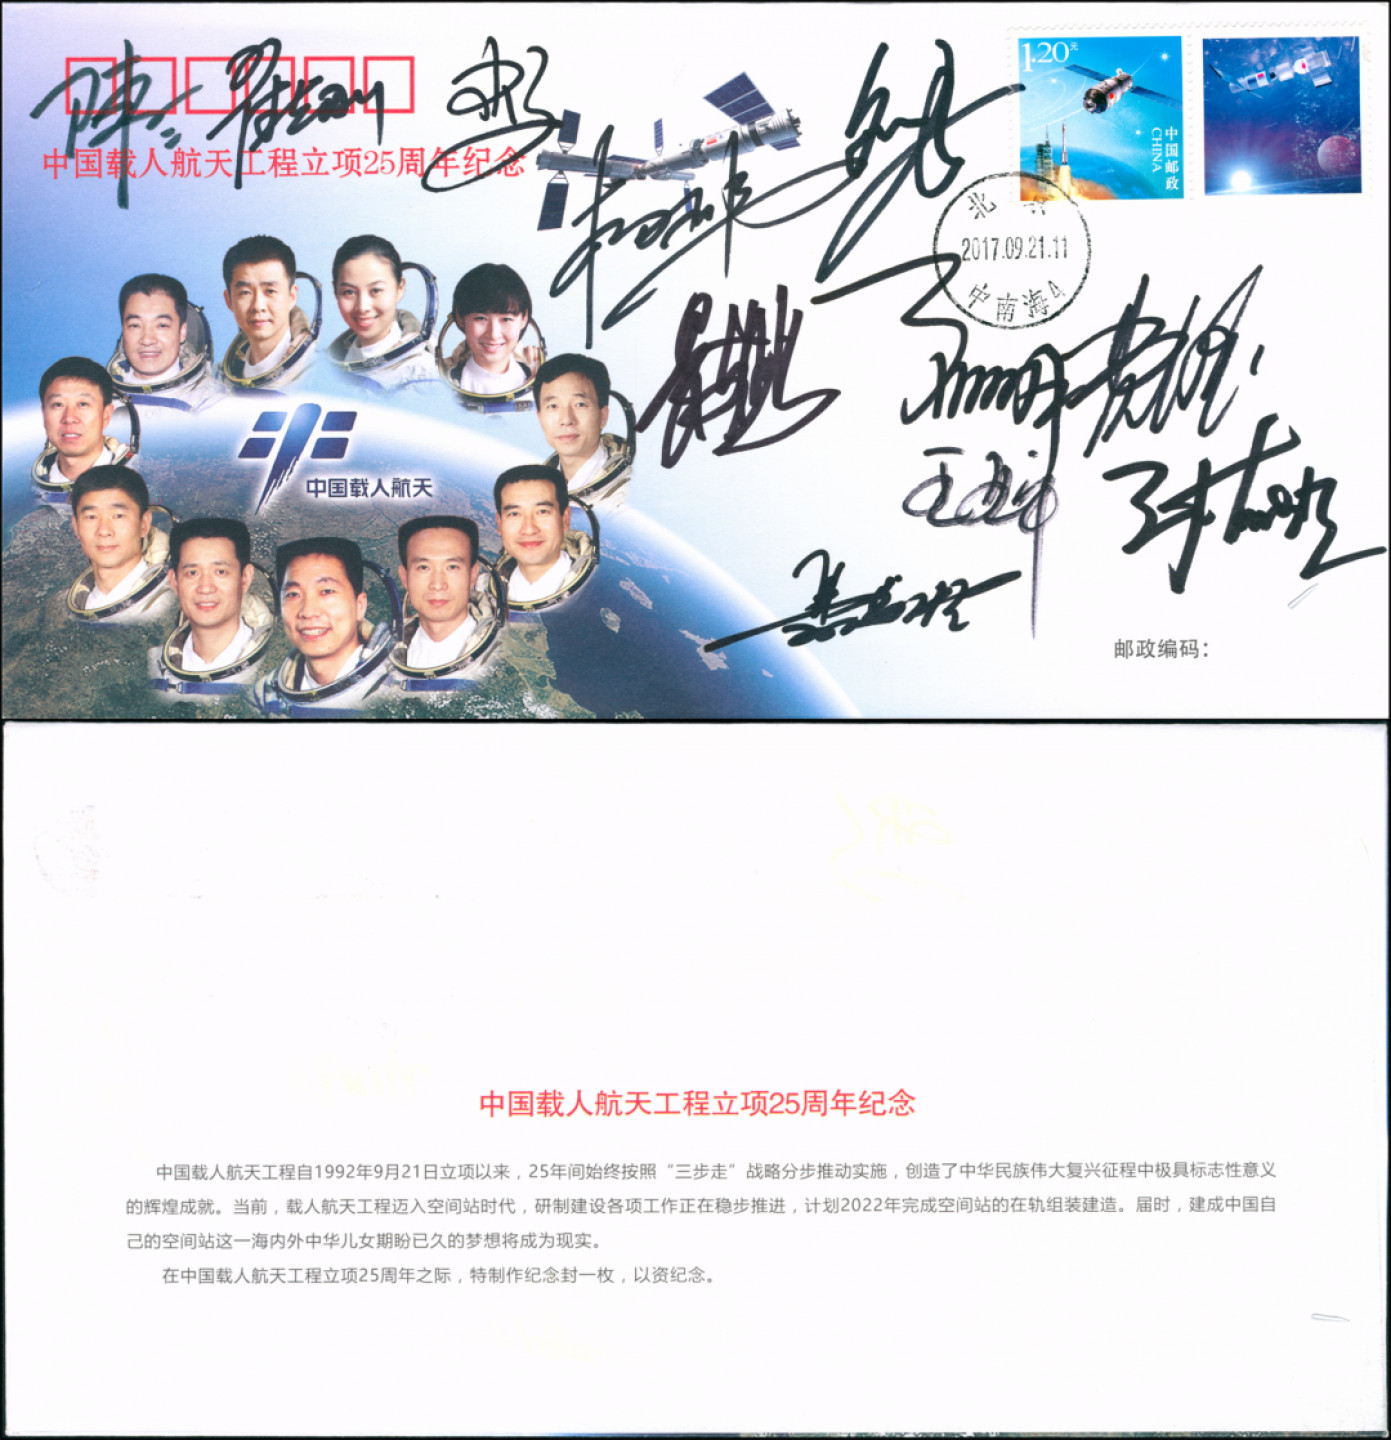 《中国载人航天工程立项25周年纪念》封一枚，全新未使用，销北京(中南海4)2017年9月21日发行首日戳。中国载人航天工程自1992年9月21日立项以来，25年间总共有11位航天员登上太空，该纪念封上印有11位航天员的头像及签名，较少见，是组集航天邮集或签名邮集极好的素材，保存完好